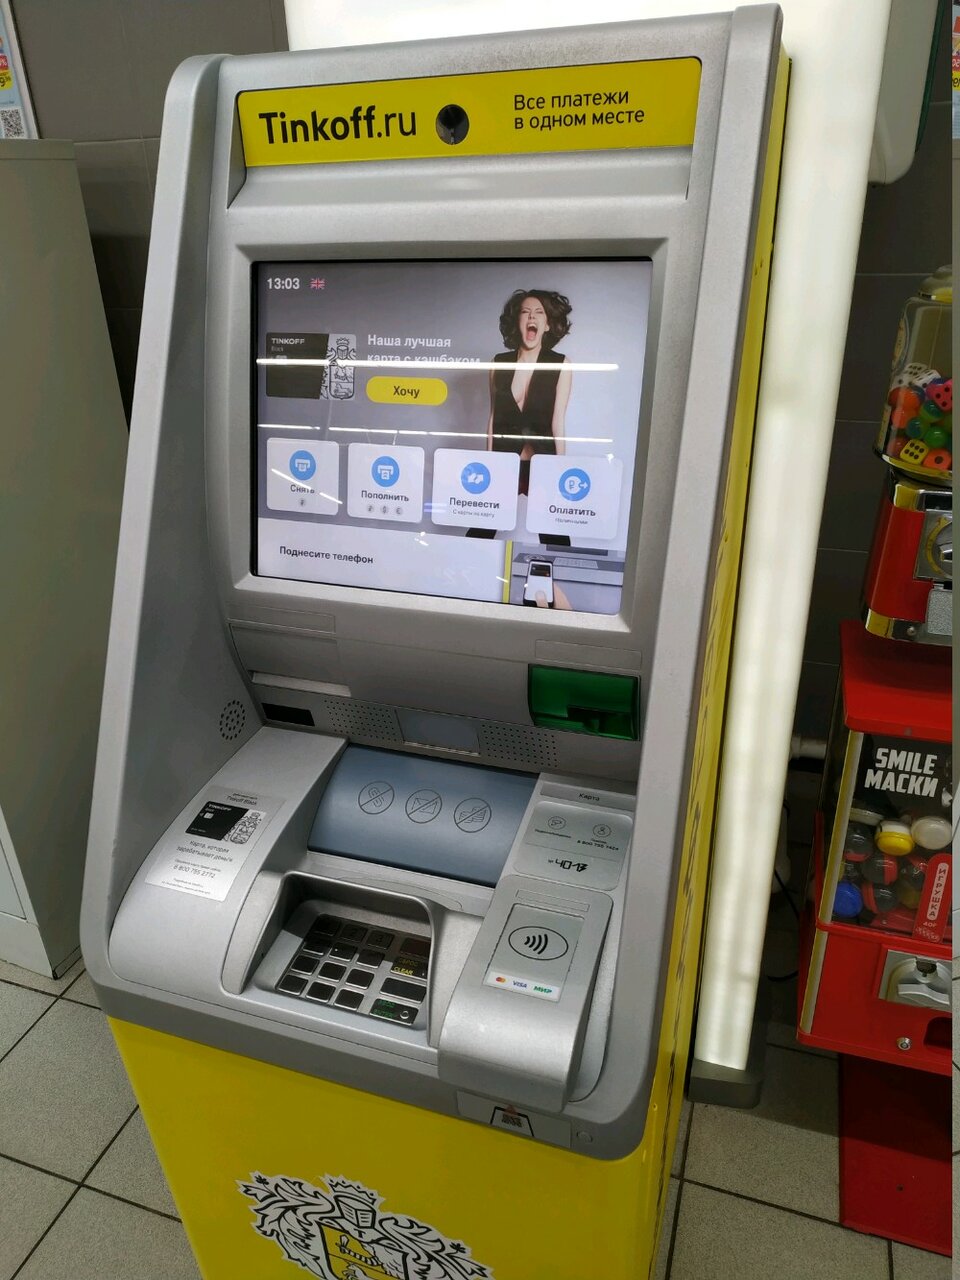 Валютные банкоматы тинькофф. Экран банкомата тинькофф. Терминал тинькофф. Интерфейс банкомата тинькофф. Валютный Банкомат тинькофф.